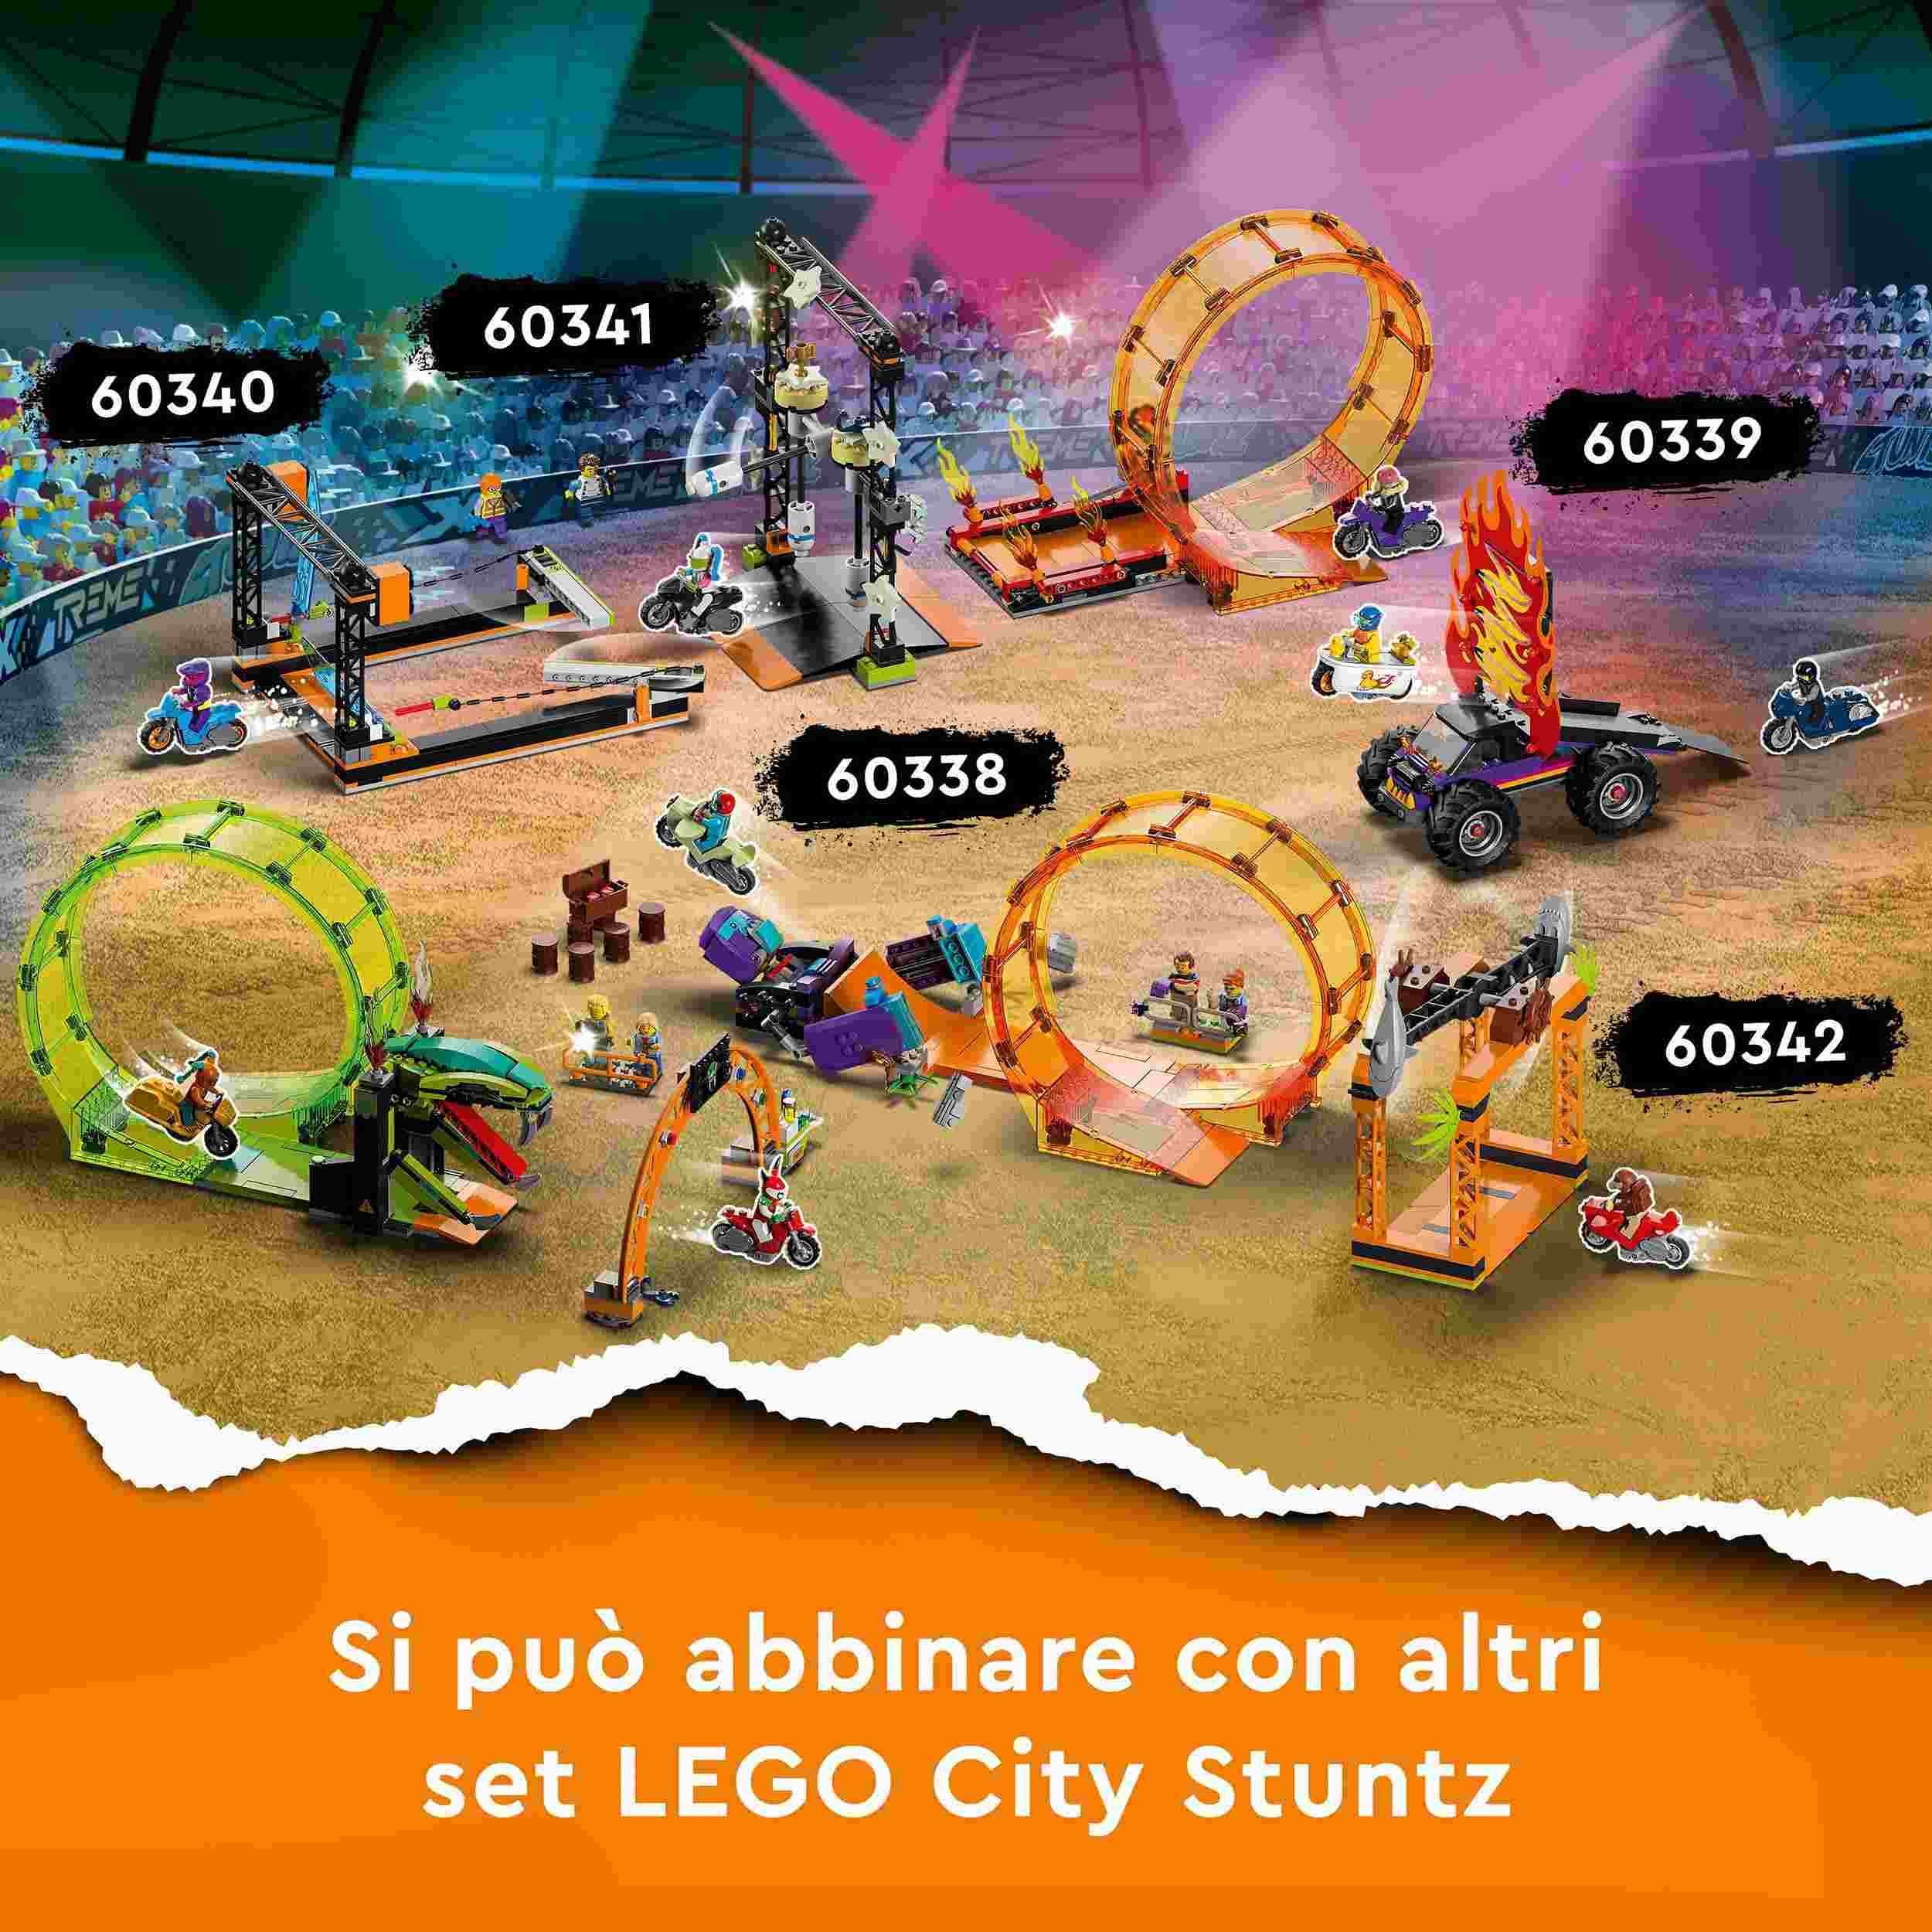 Lego city stuntz 60342 sfida acrobatica attacco dello squalo, moto giocattolo con minifigure, giochi per bambini dai 5 anni - LEGO CITY, LEGO CITY STUNTZ, Lego